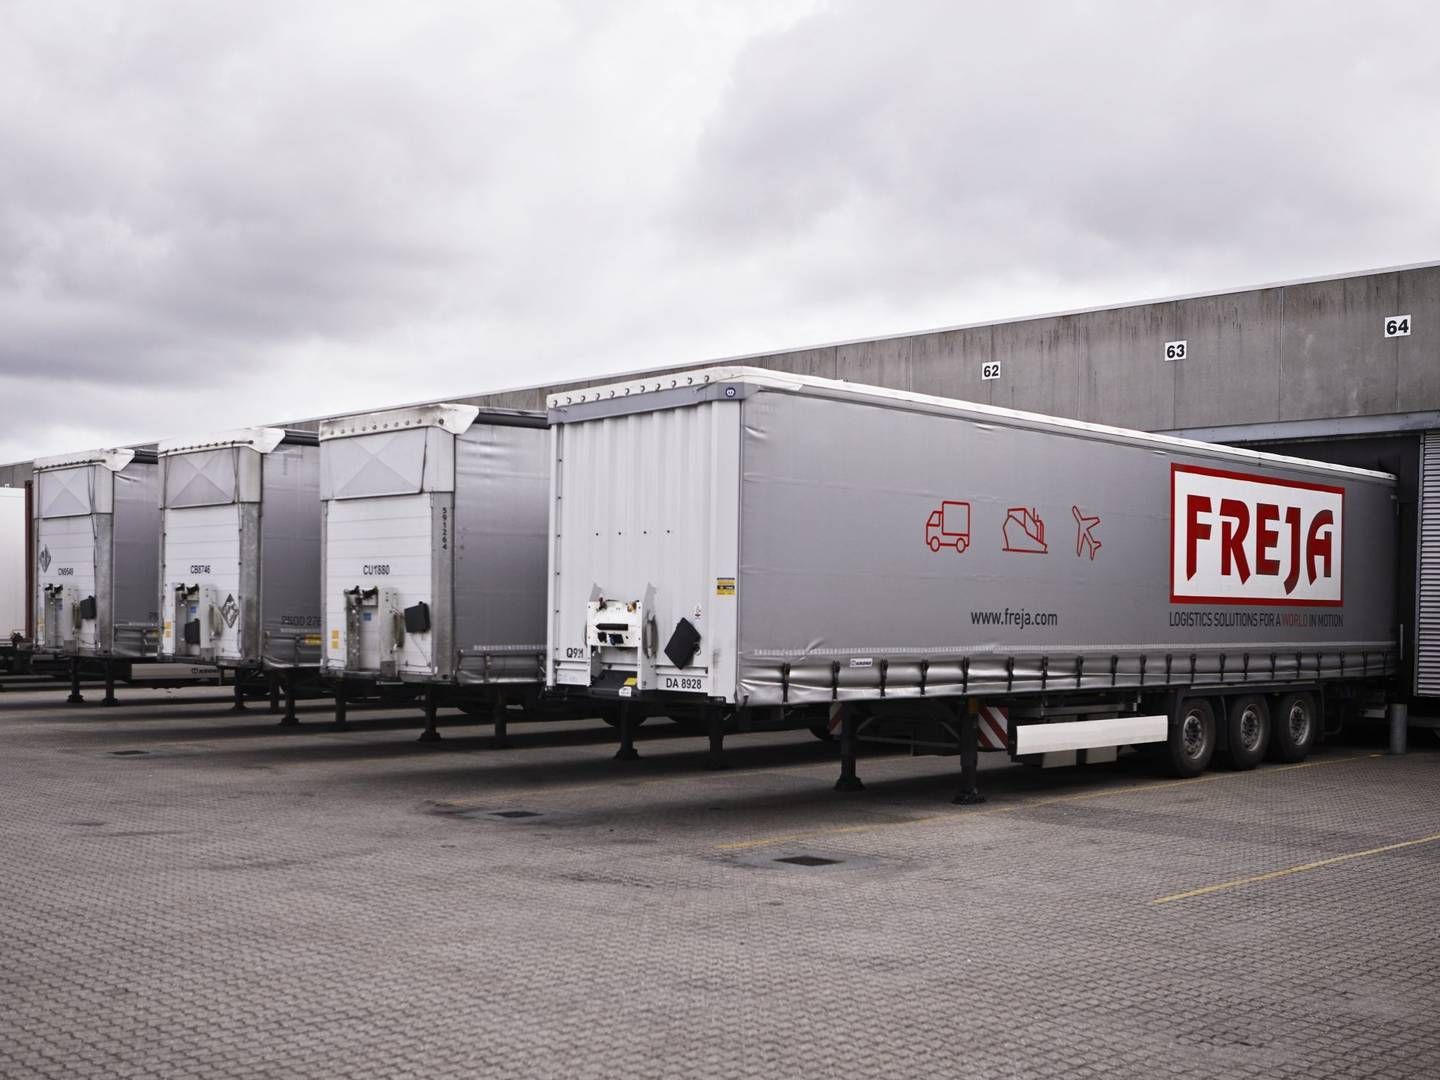 Foto: Freja Transport og Logistics/pr